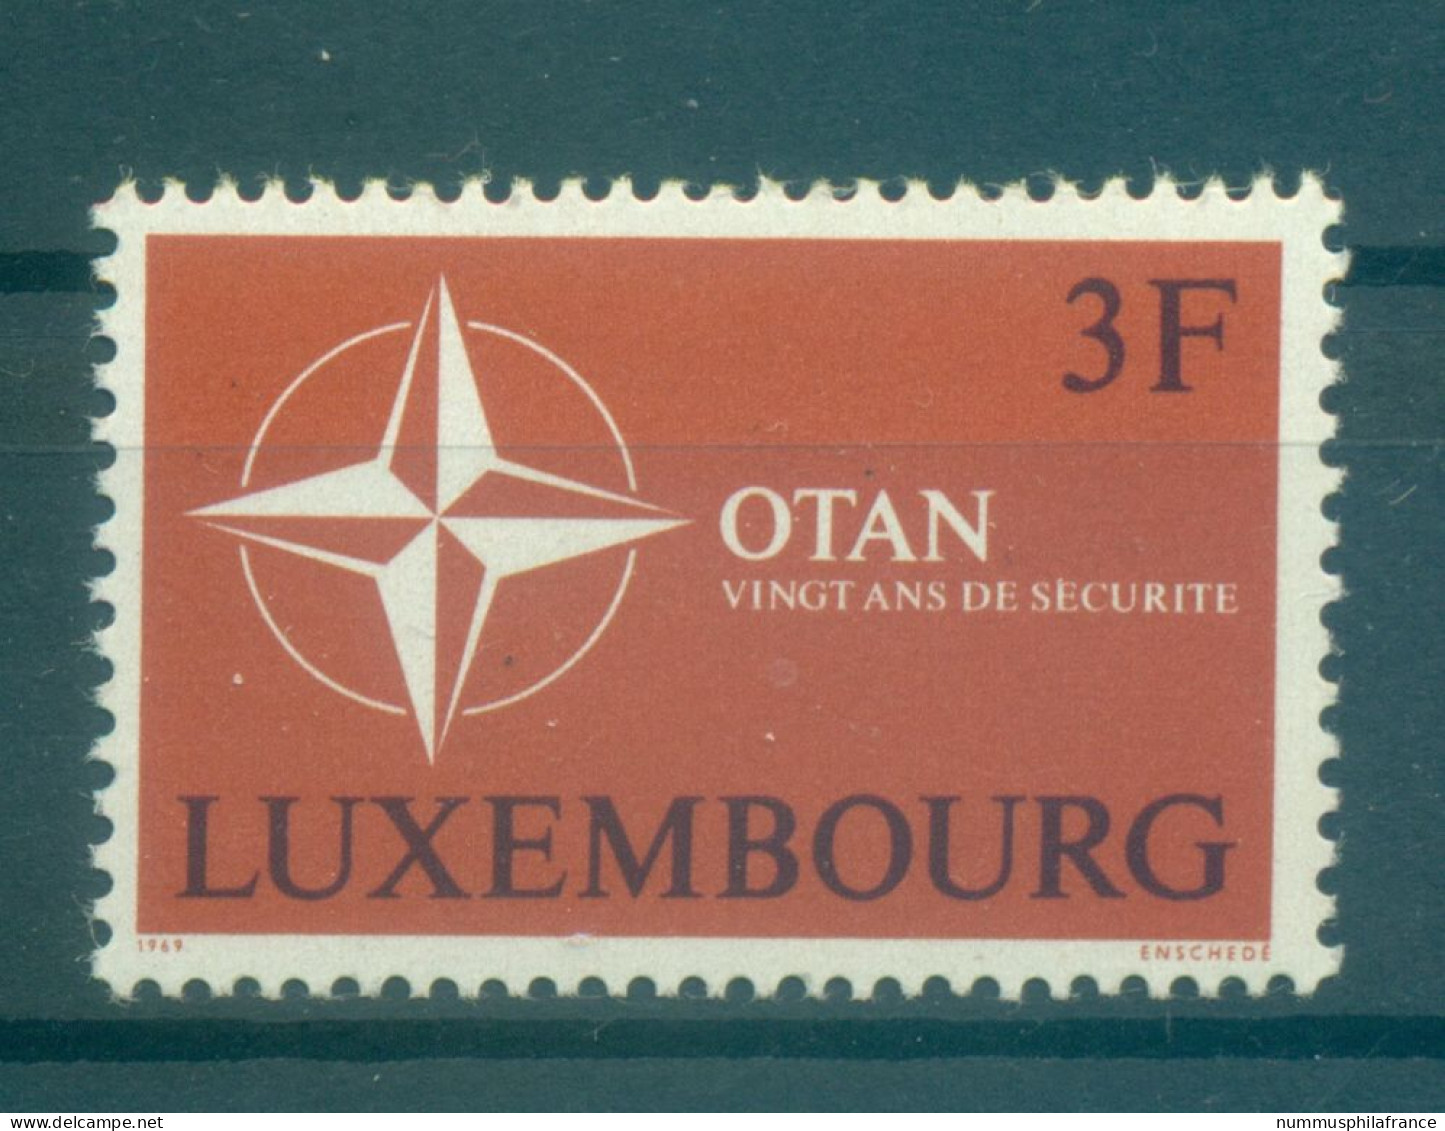 Luxembourg 1969 - Y & T N. 744 - OTAN (Michel N. 794) - Neufs